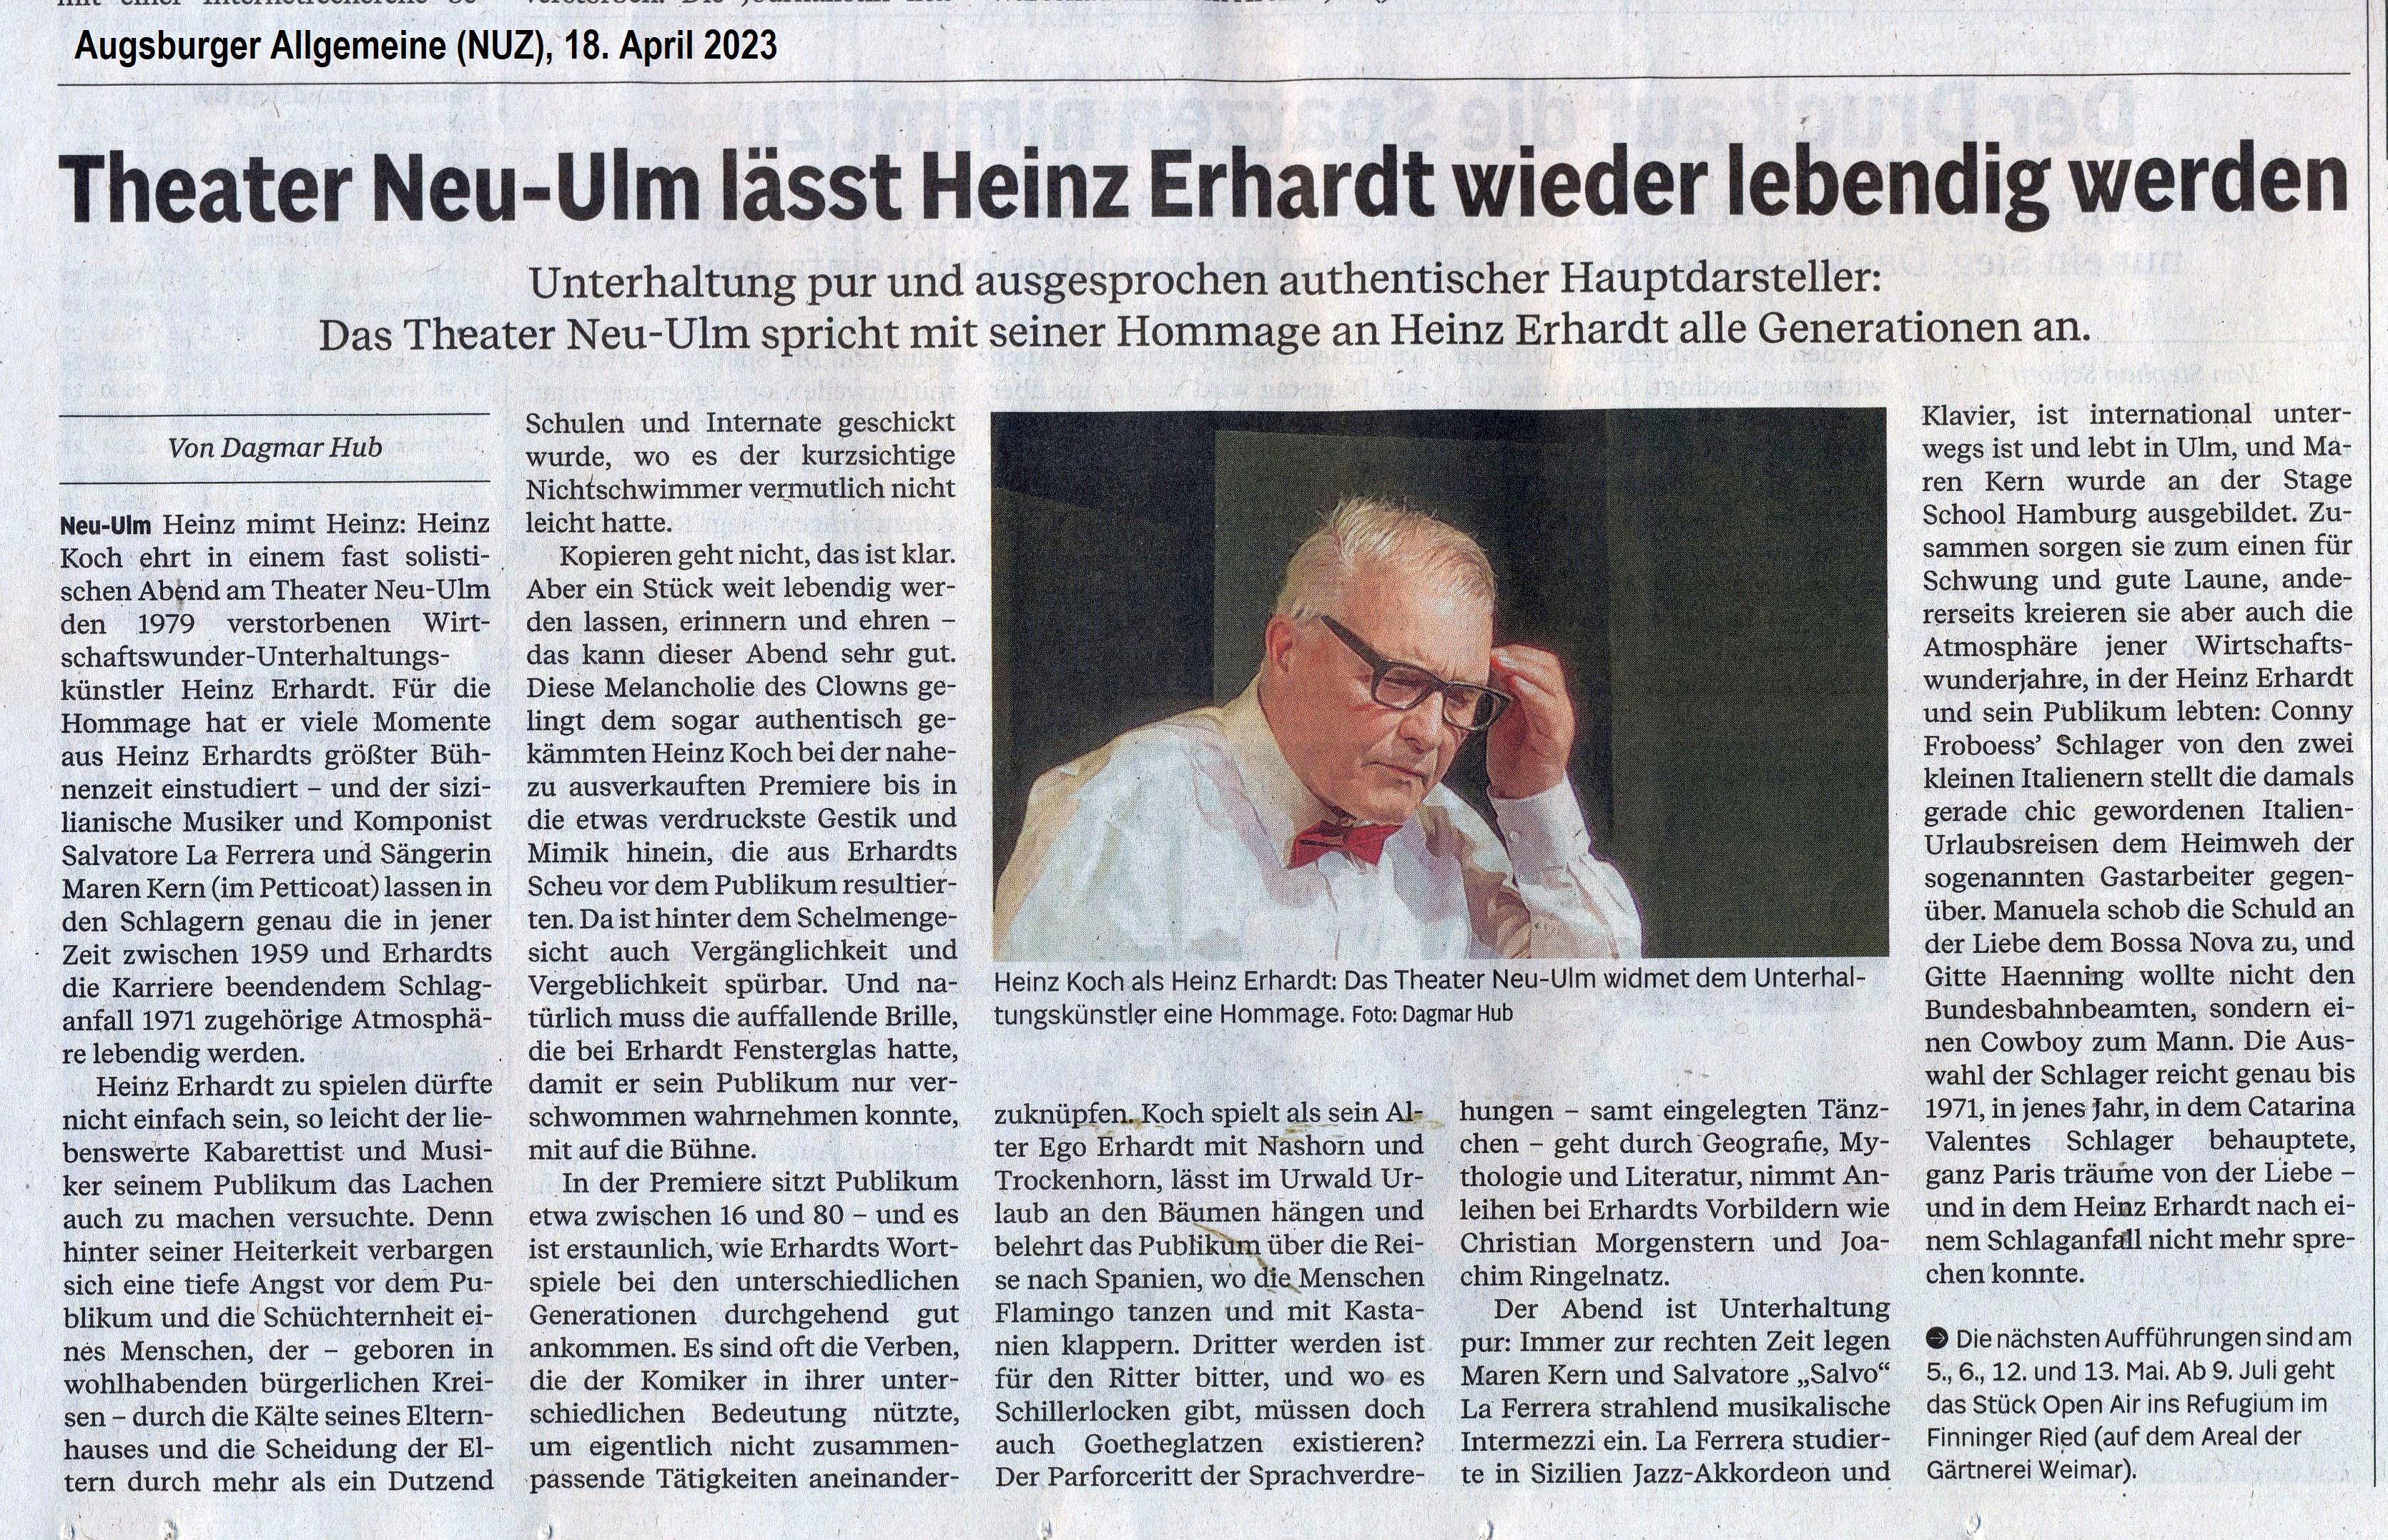 Heinz Koch als Heinz Erhardt